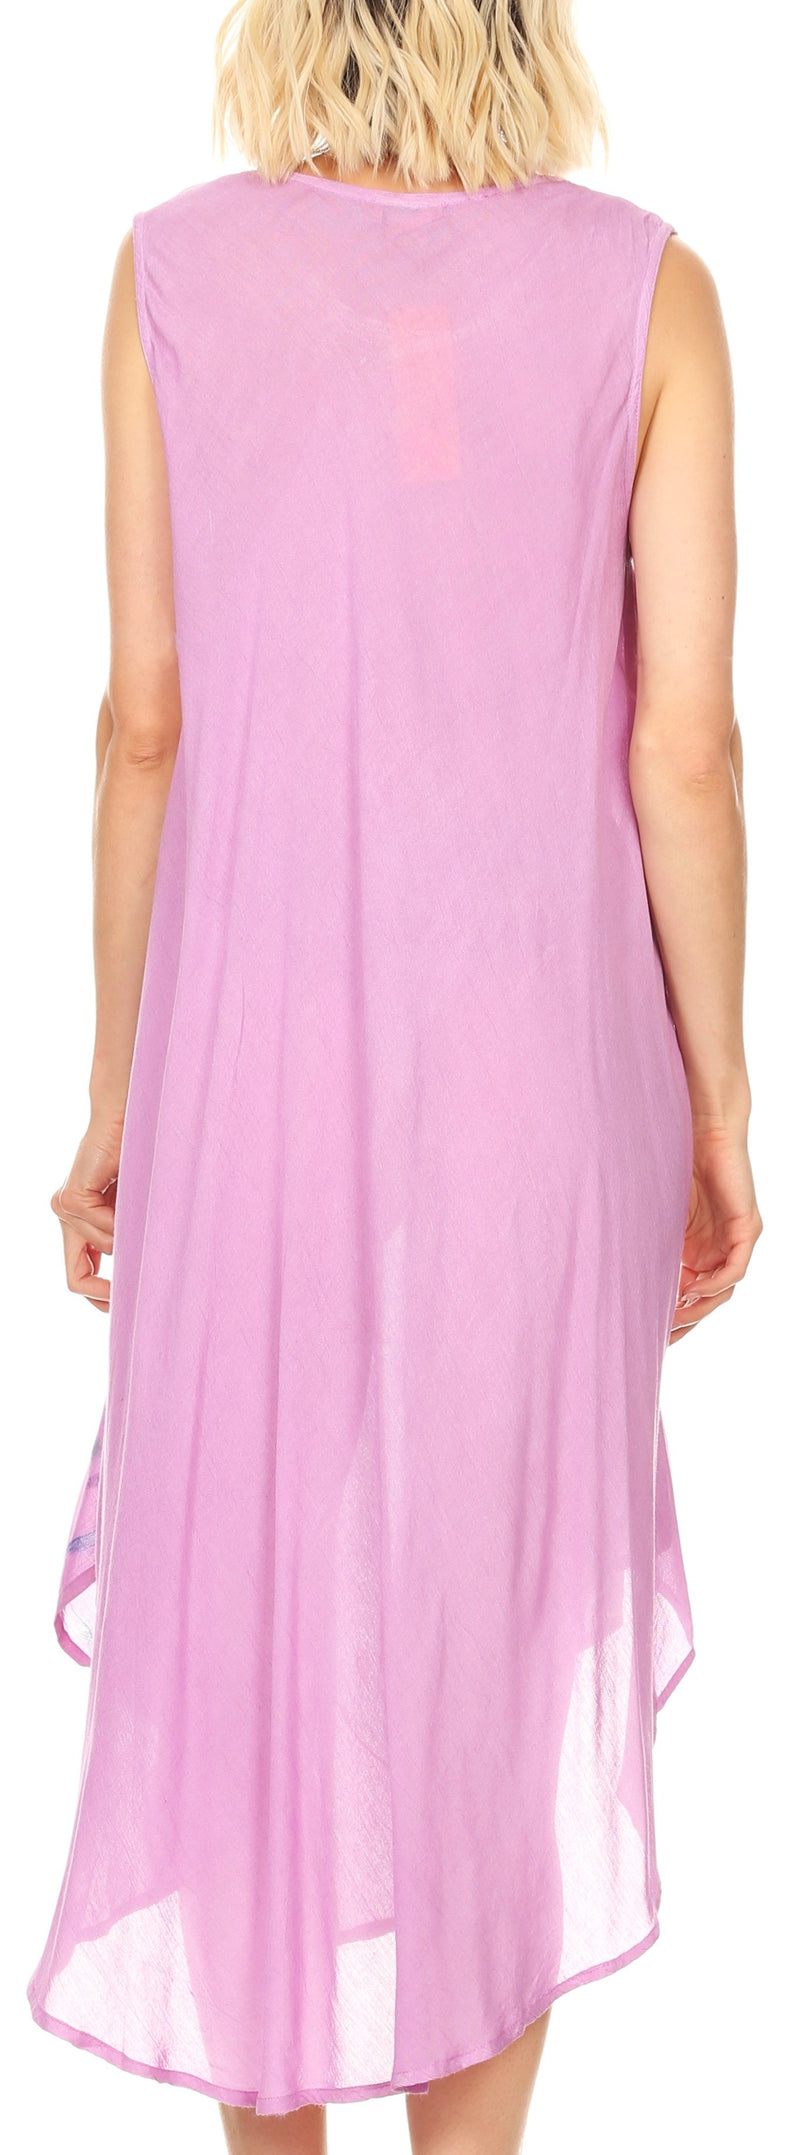 Sakkas Tia Women's Casual Summer Maxi Loose Fit Sleeveless Tank Dress Cover-up